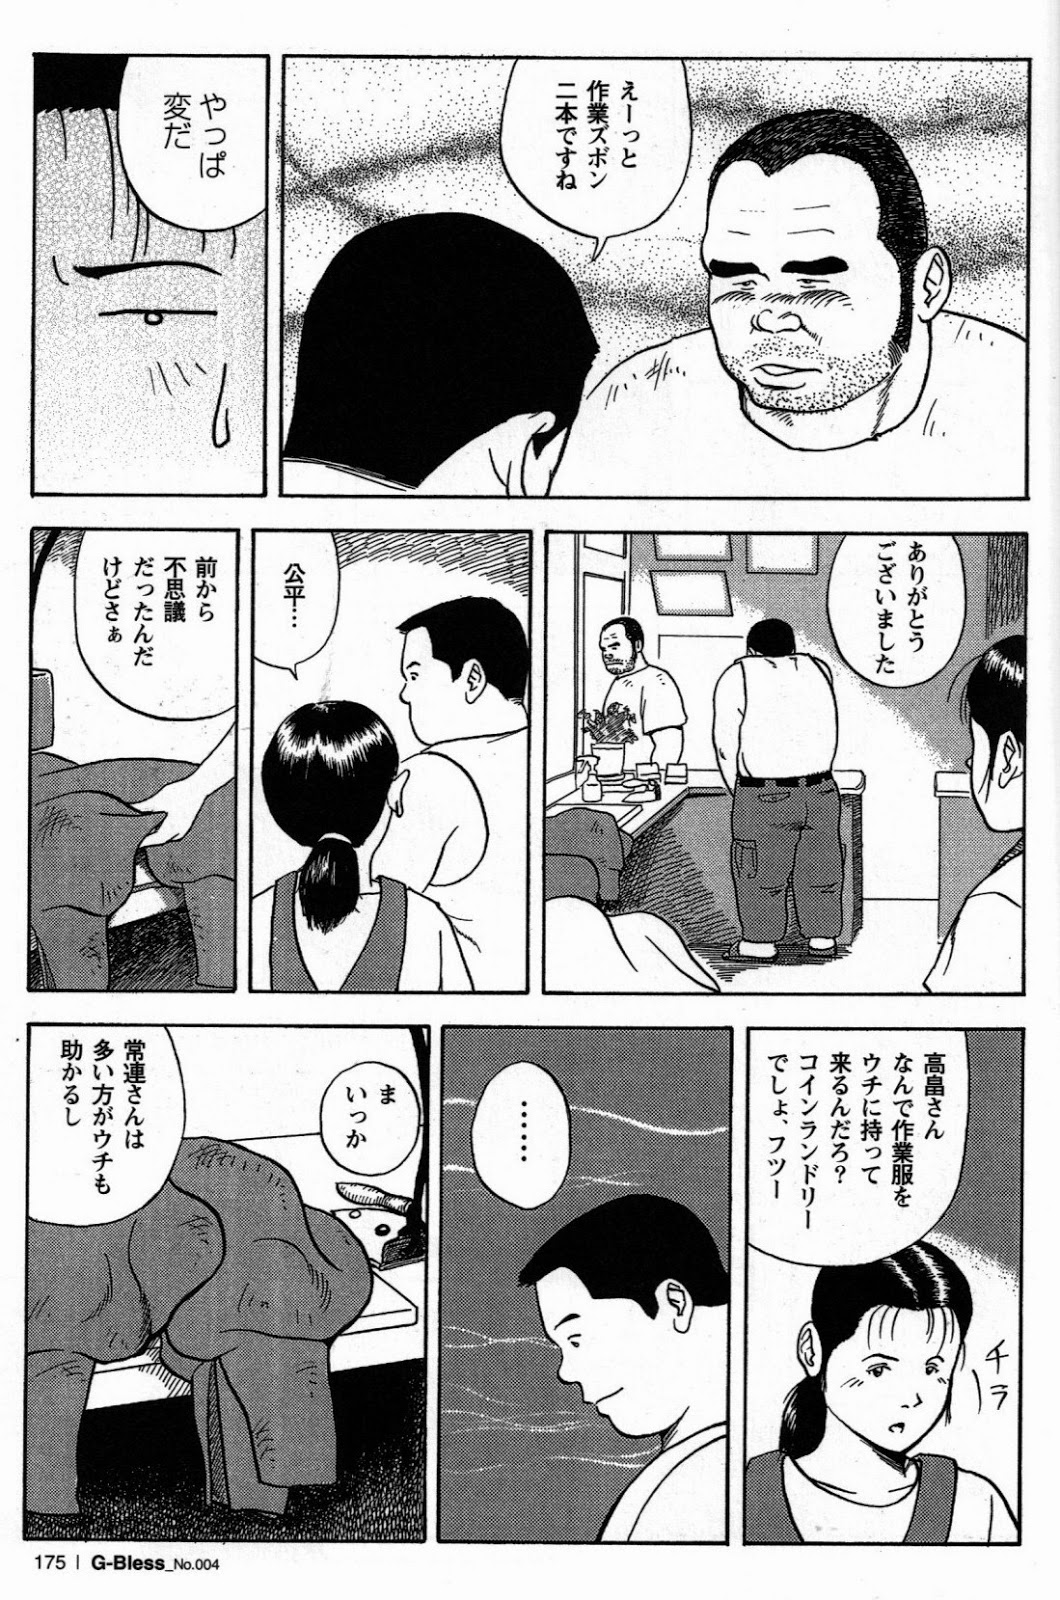 [Tatsumi Daigo, Yoshihiko Takeo] Sentakuya Bugi (GBless Vol.04) page 5 full